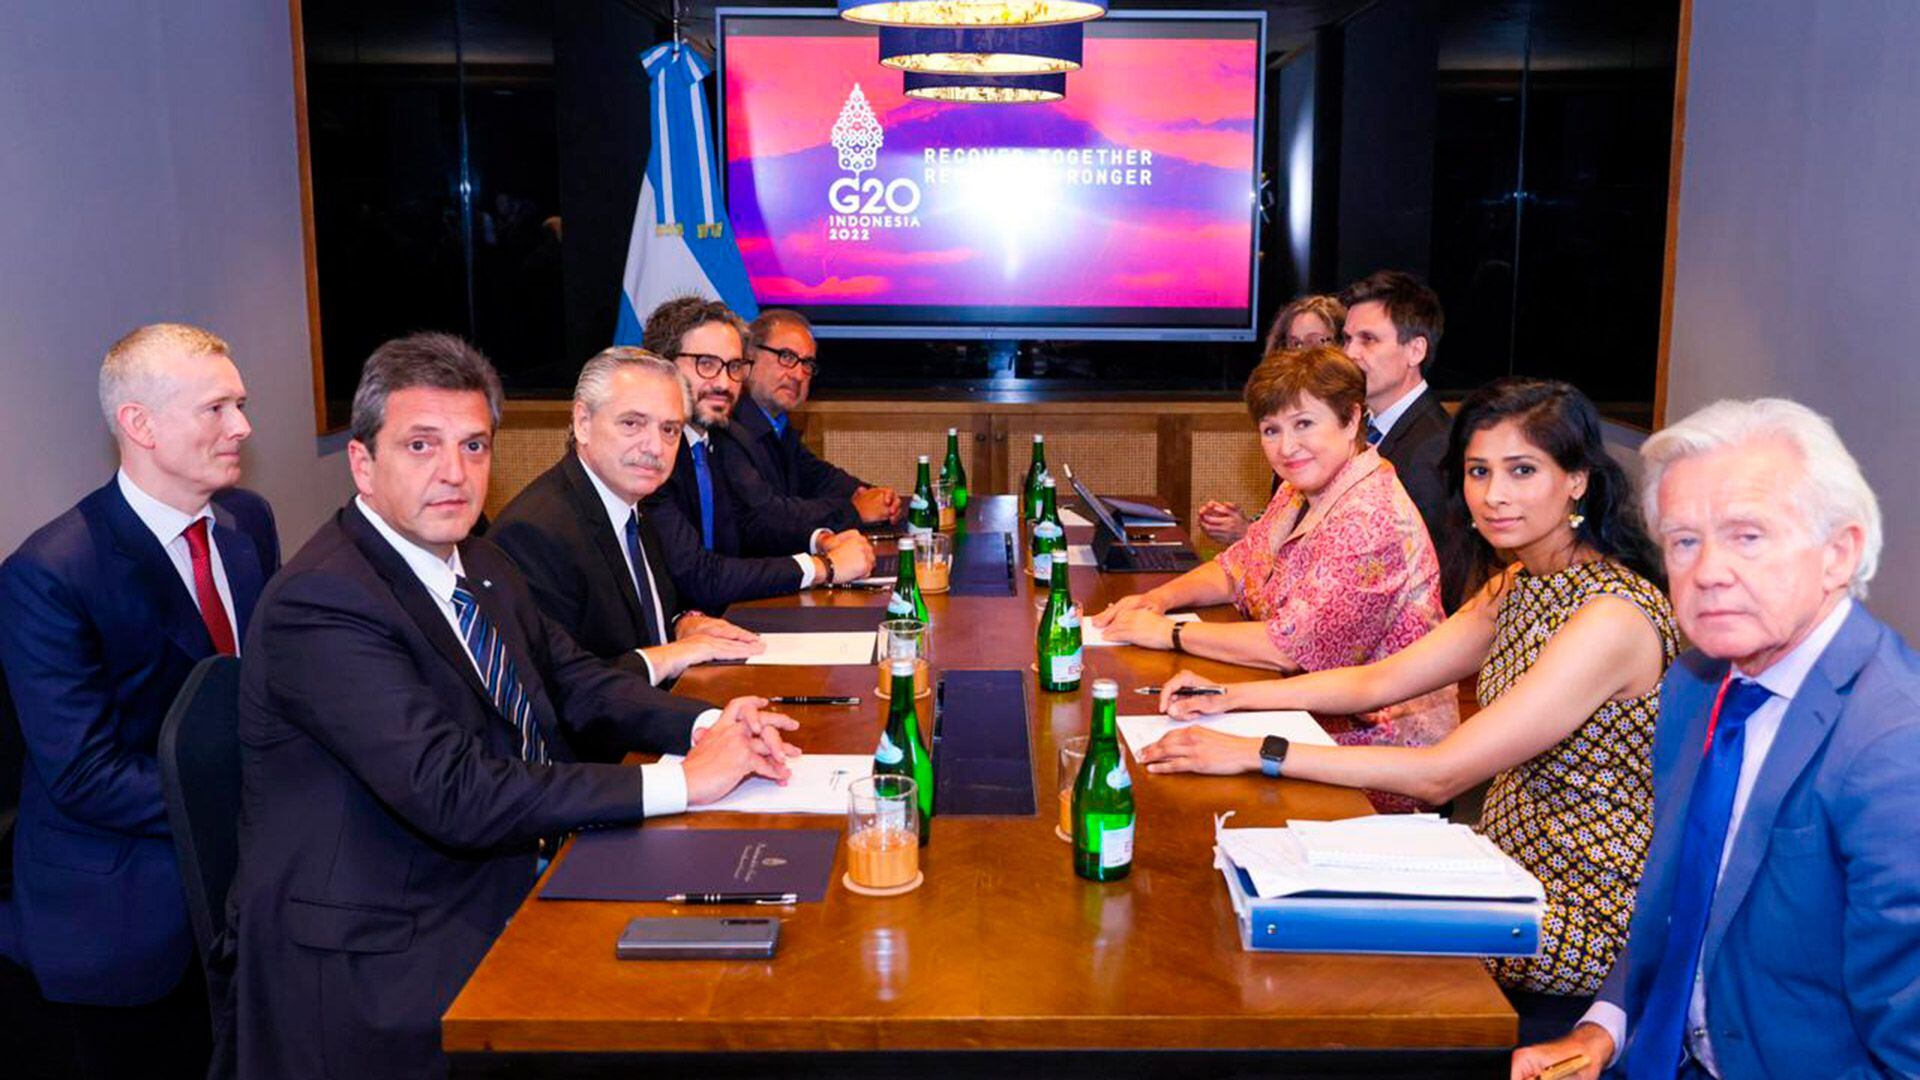 El momento de la foto en la reunión del presidente Alberto Fernández y el ministro Massa con la delegación del FMI, encabezada por Kristalina Georgieva, en la reunión del G20 en Indonesia